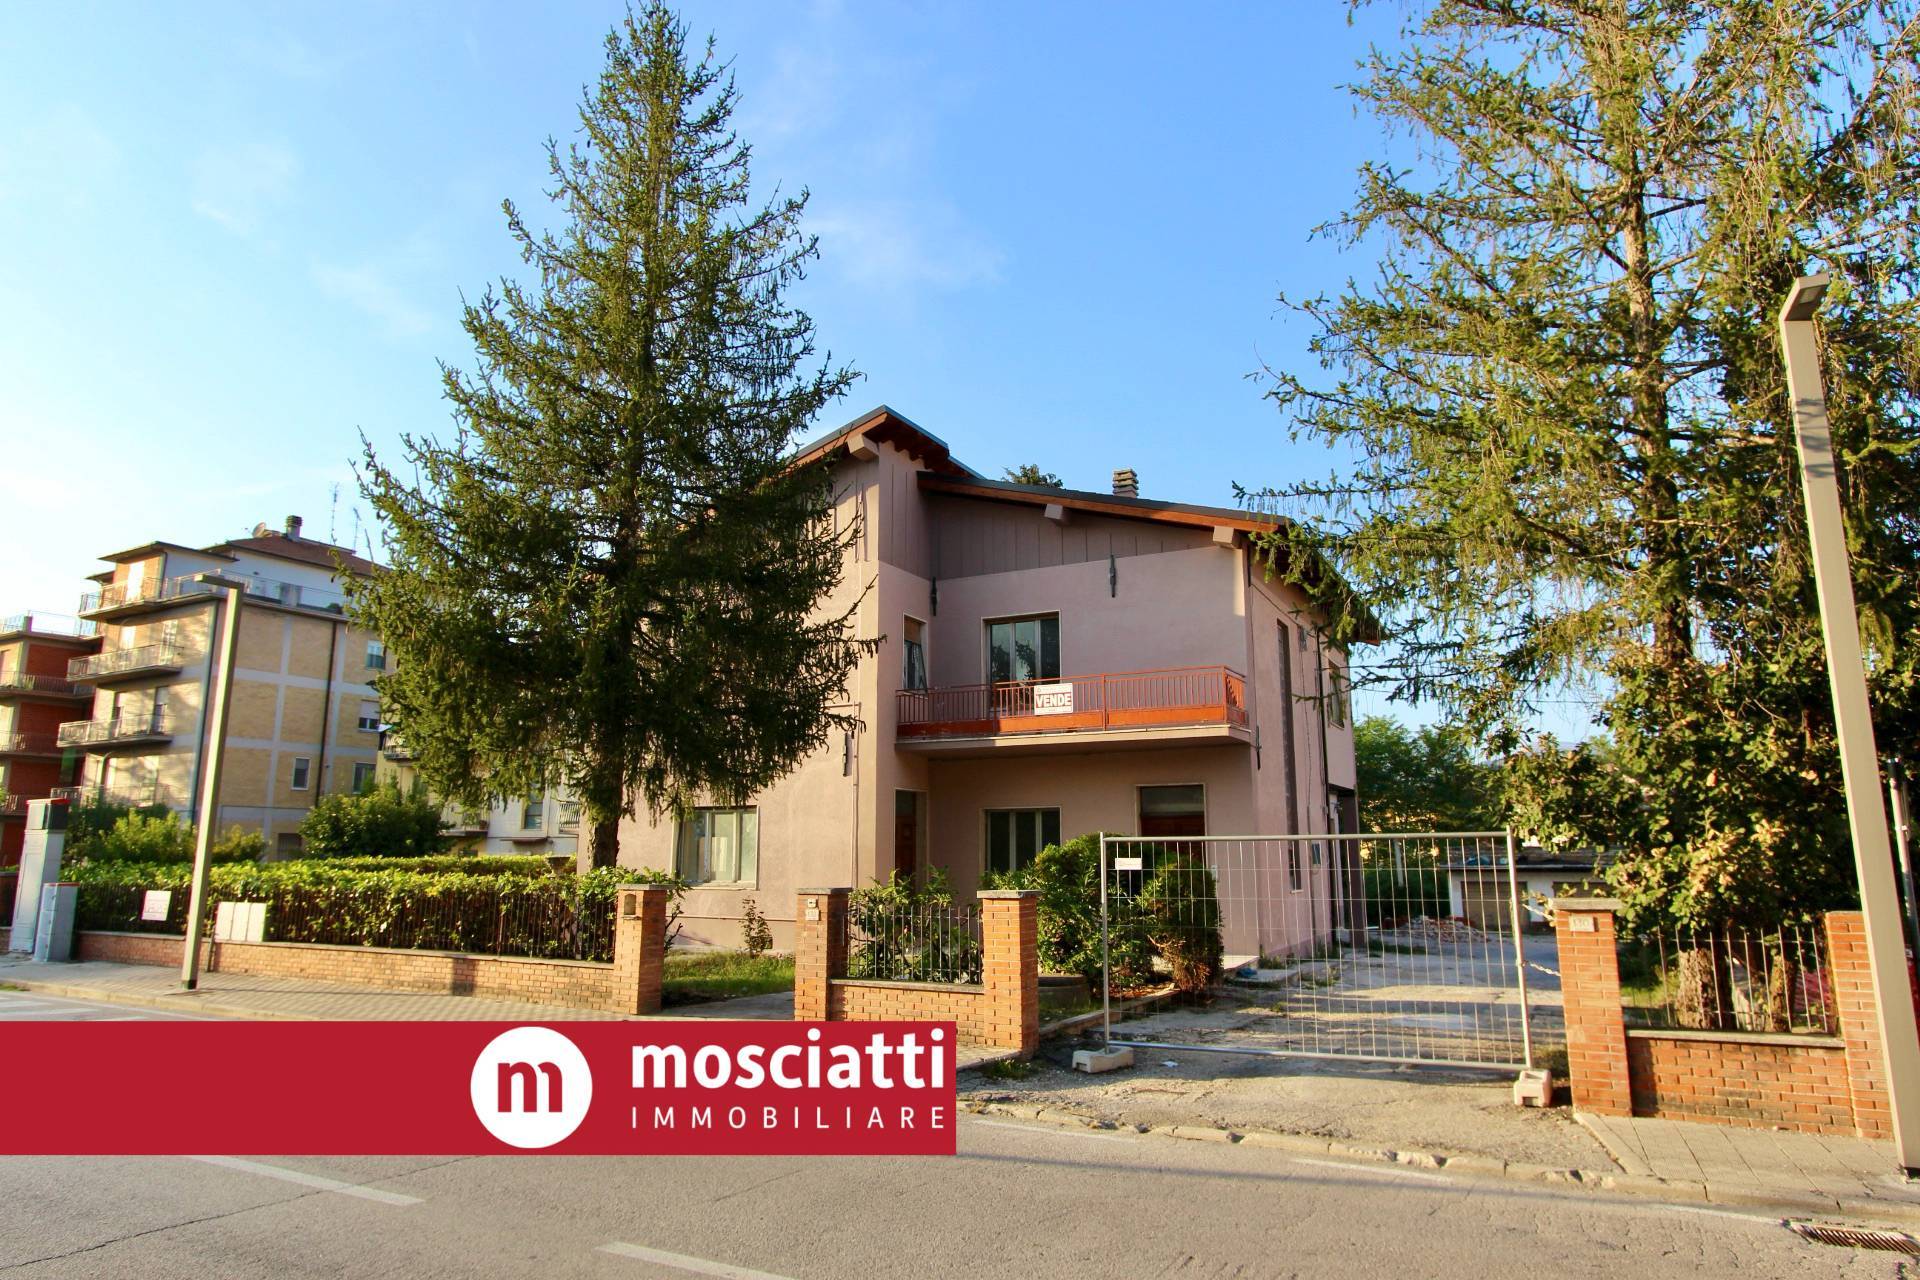 Appartamento in vendita a Castelraimondo, 4 locali, prezzo € 125.000 | PortaleAgenzieImmobiliari.it